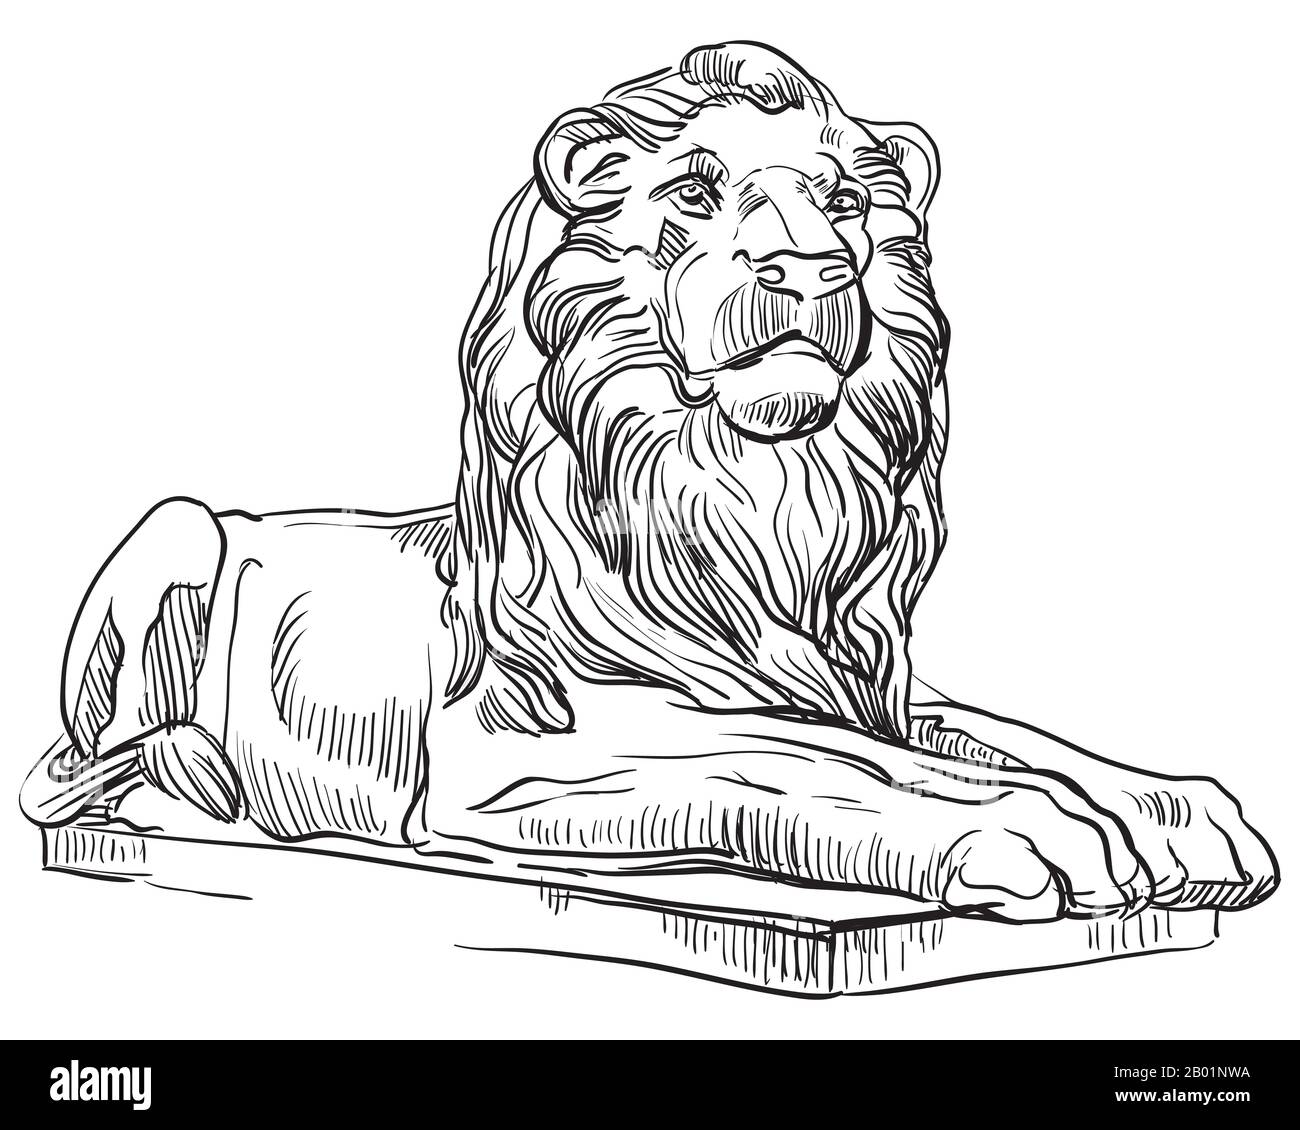 Skizze der klassischen griechischen Löwenstatue Profilansicht. Vector Hand Drawing Illustration in schwarzer Farbe isoliert auf weißem Hintergrund. Grafikelement für Stock Vektor